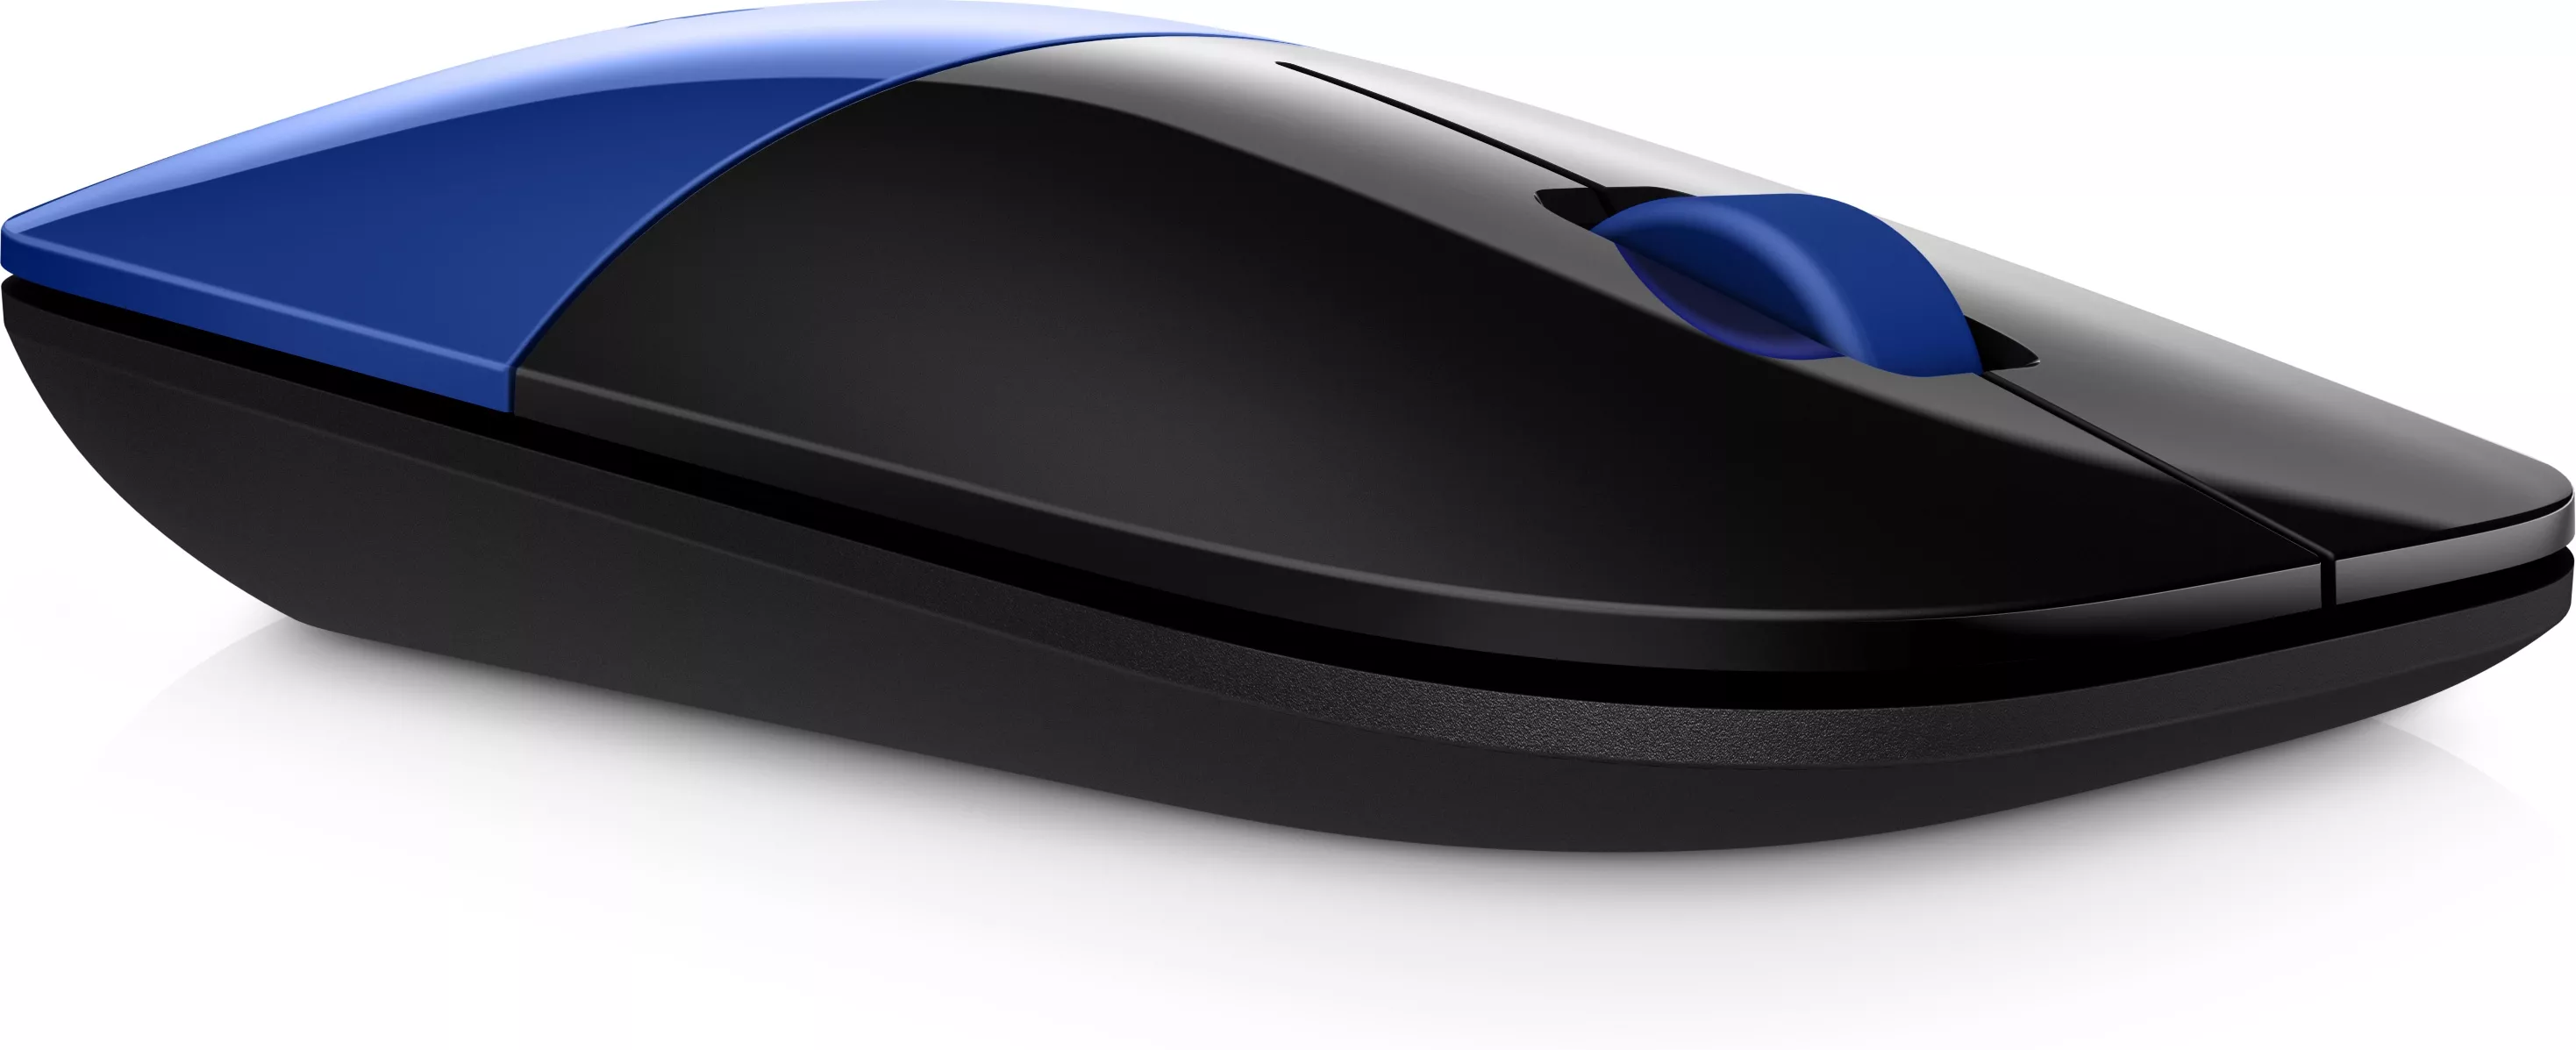 Achat HP Z3700 Blue Wireless Mouse sur hello RSE - visuel 5